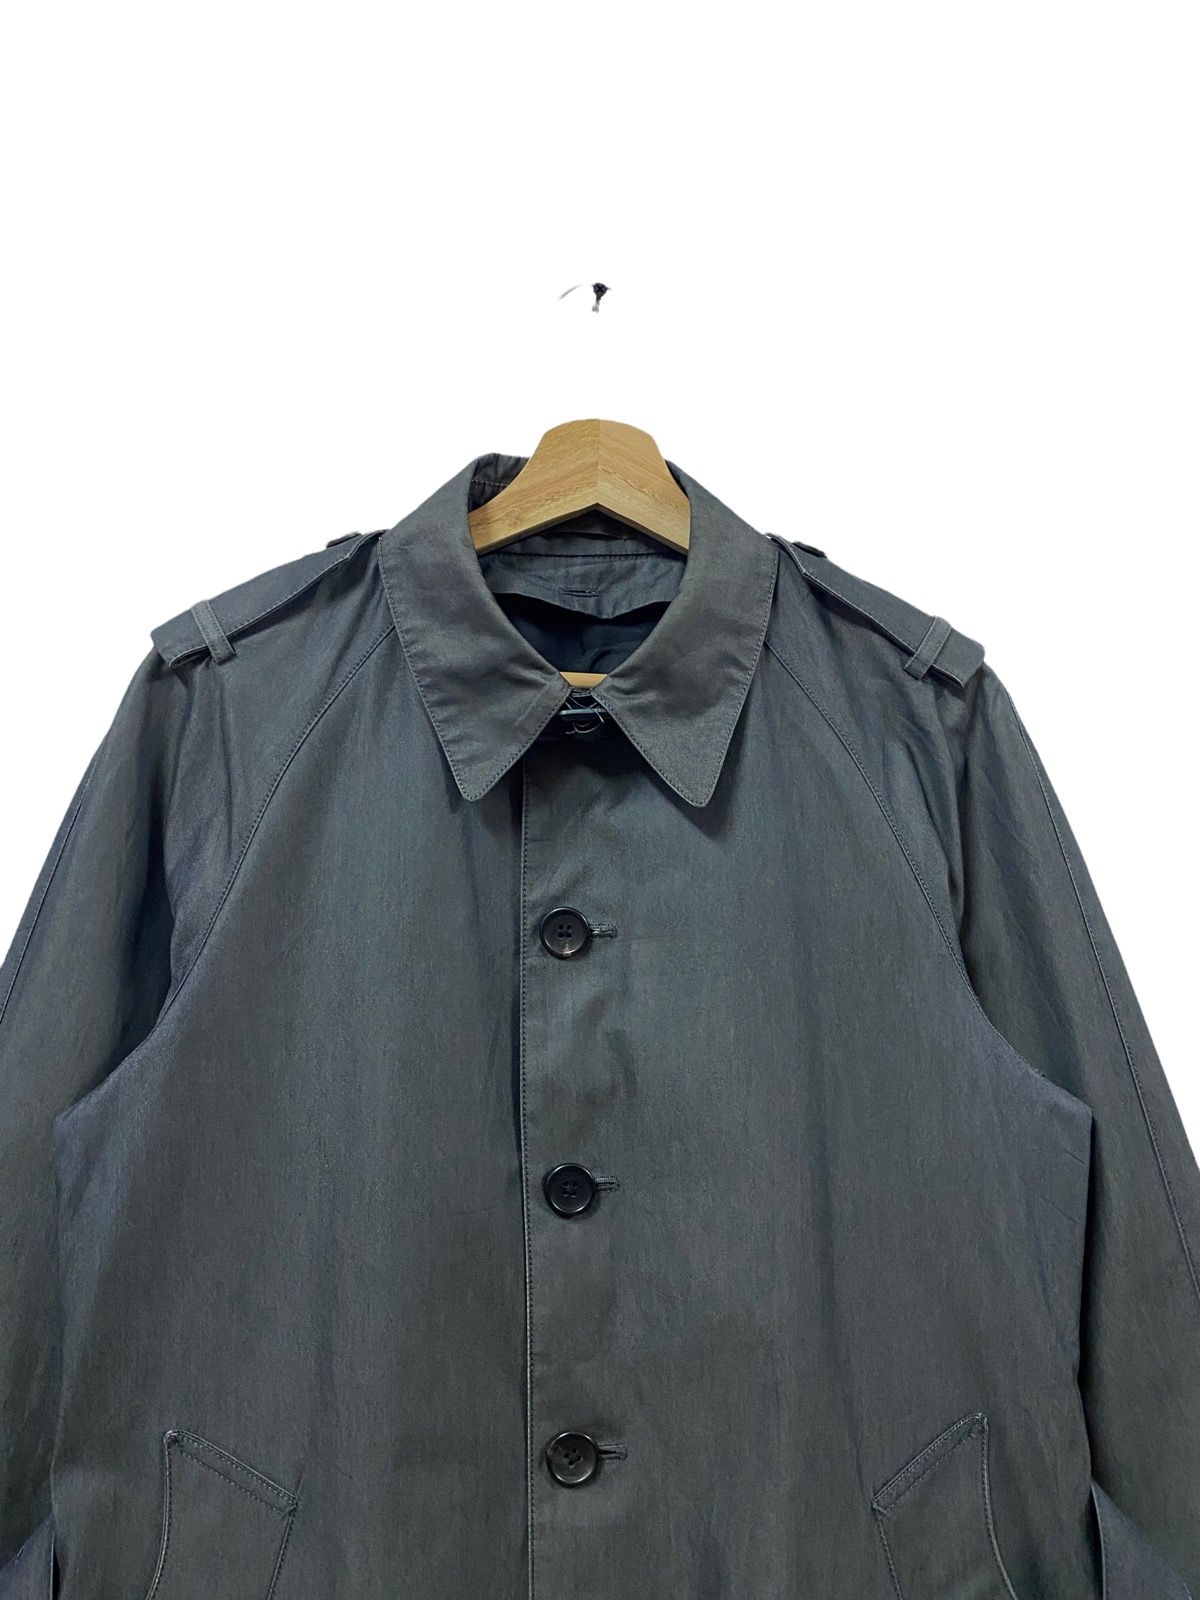 PS Paul Smith Trech Coat Grey Jacket - 3